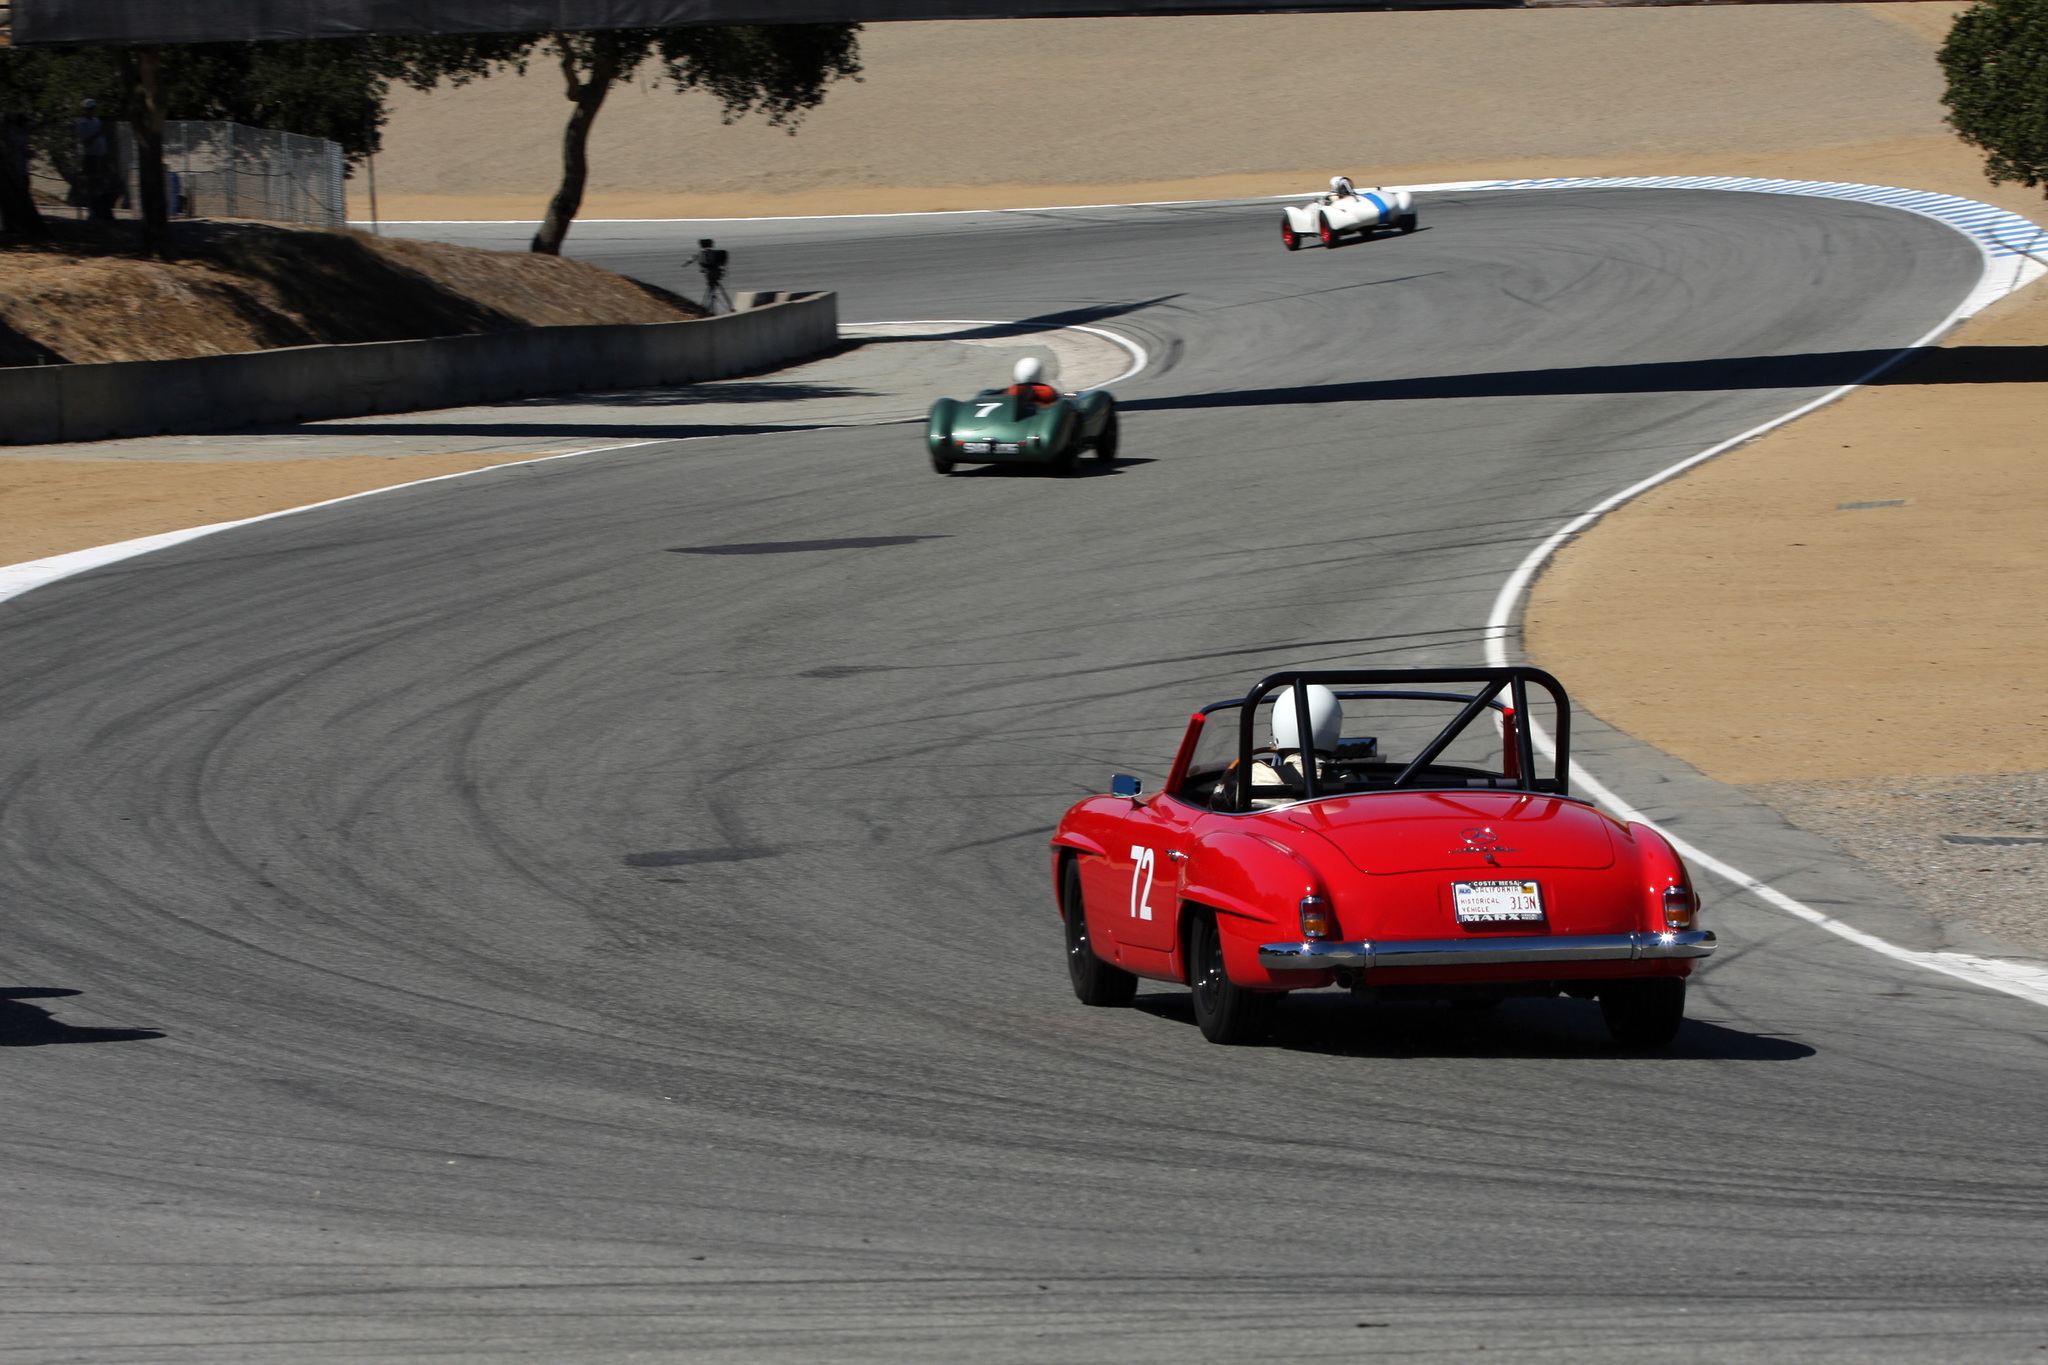 2014 Rolex Monterey Motorsports Reunion-13